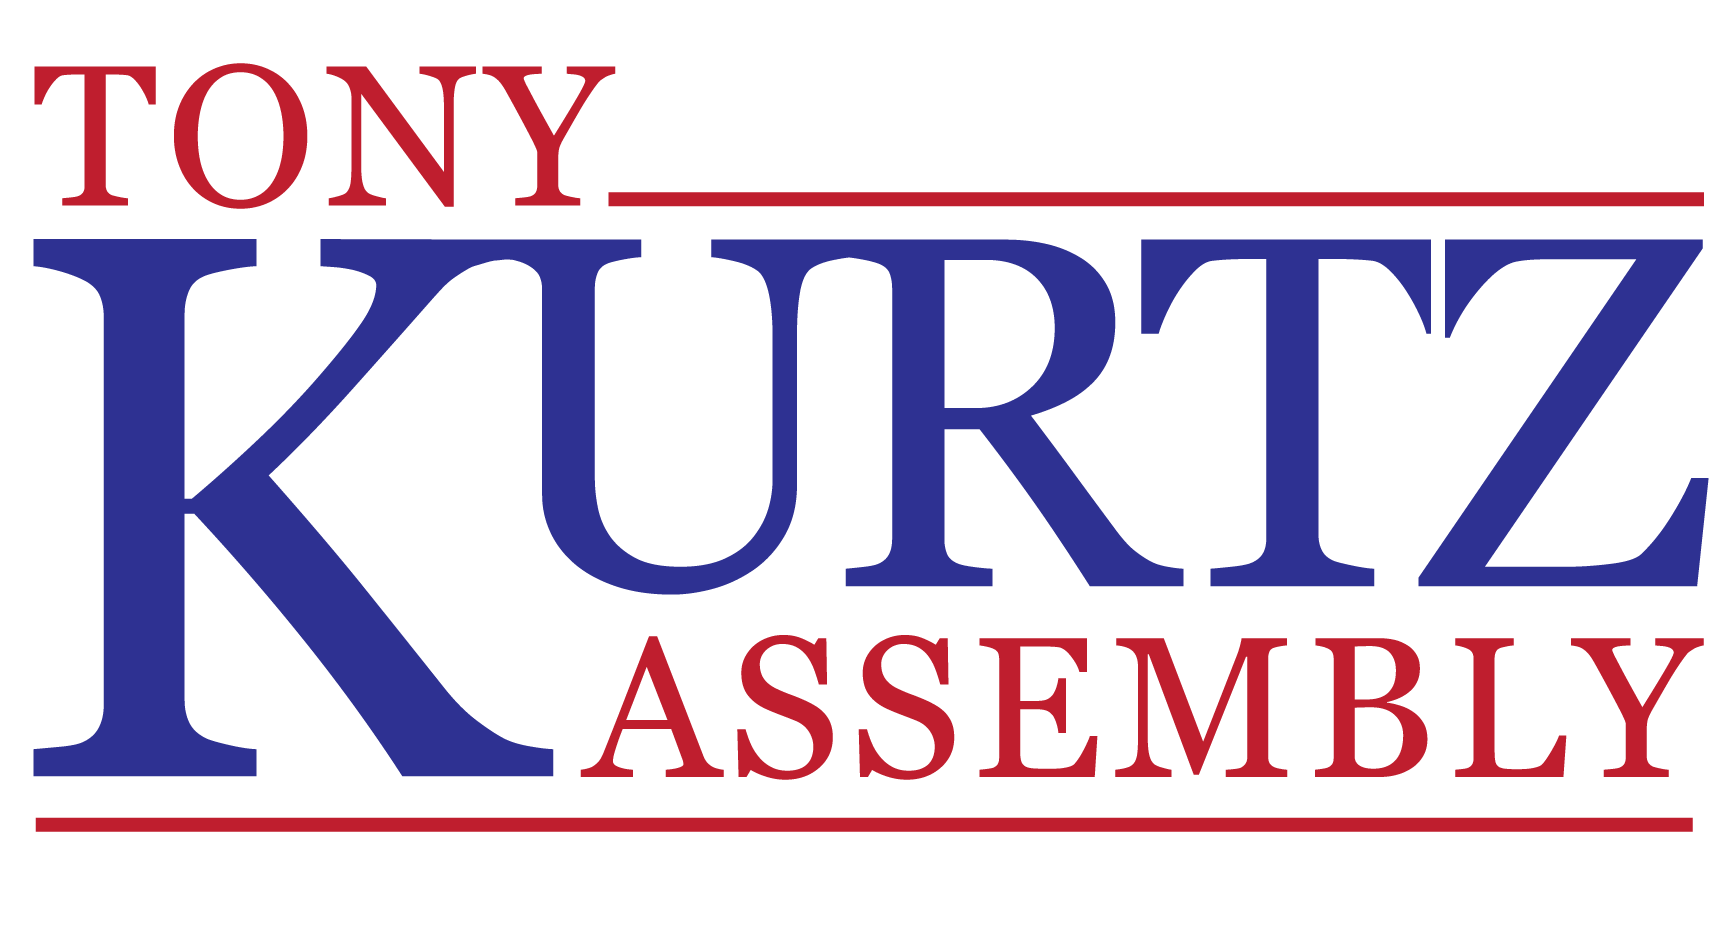 Kurtz For Assembly